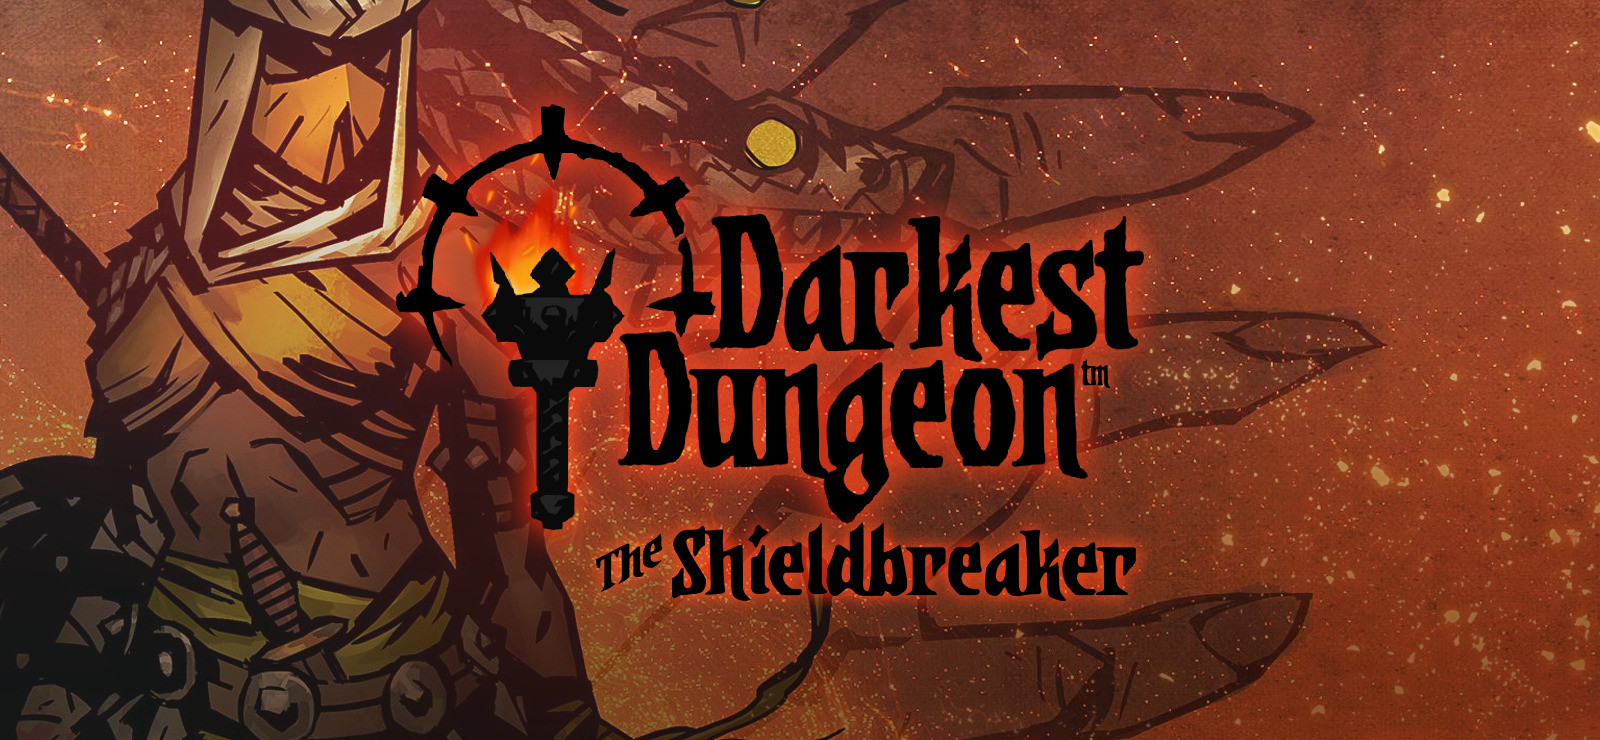 laudanum darkest dungeon shieldbreaker